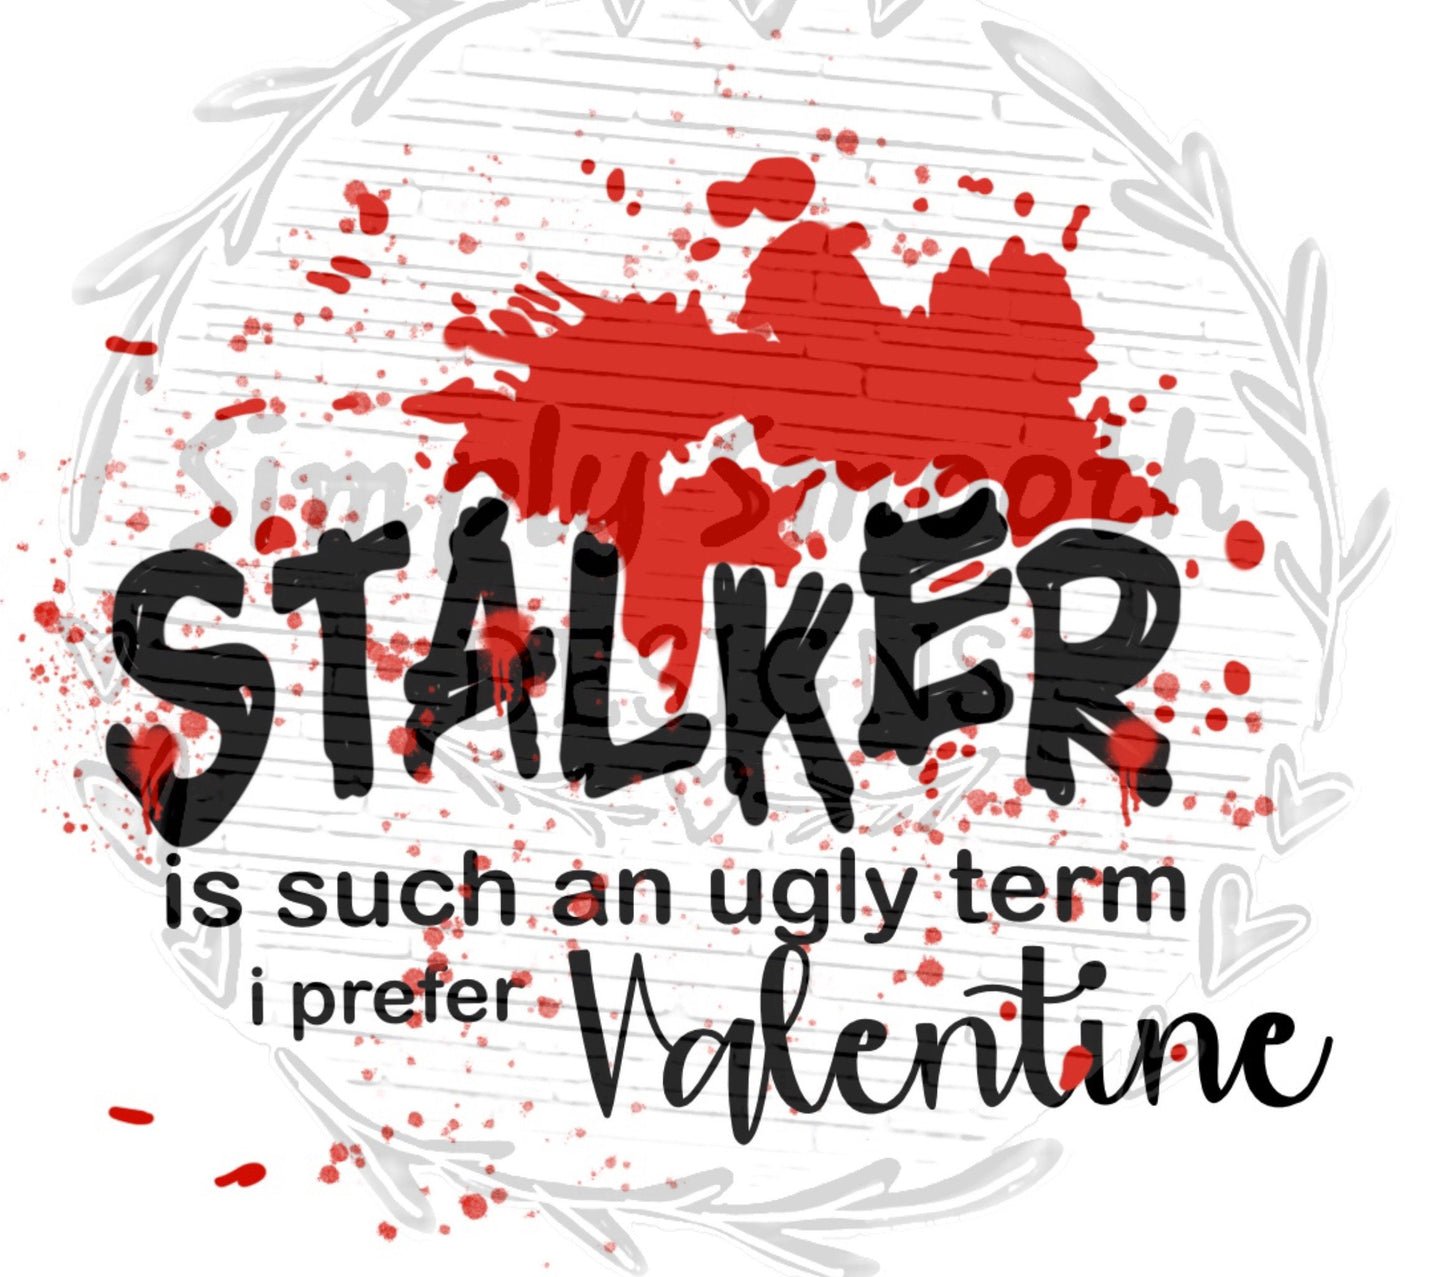 Stalker Valentine’s Day